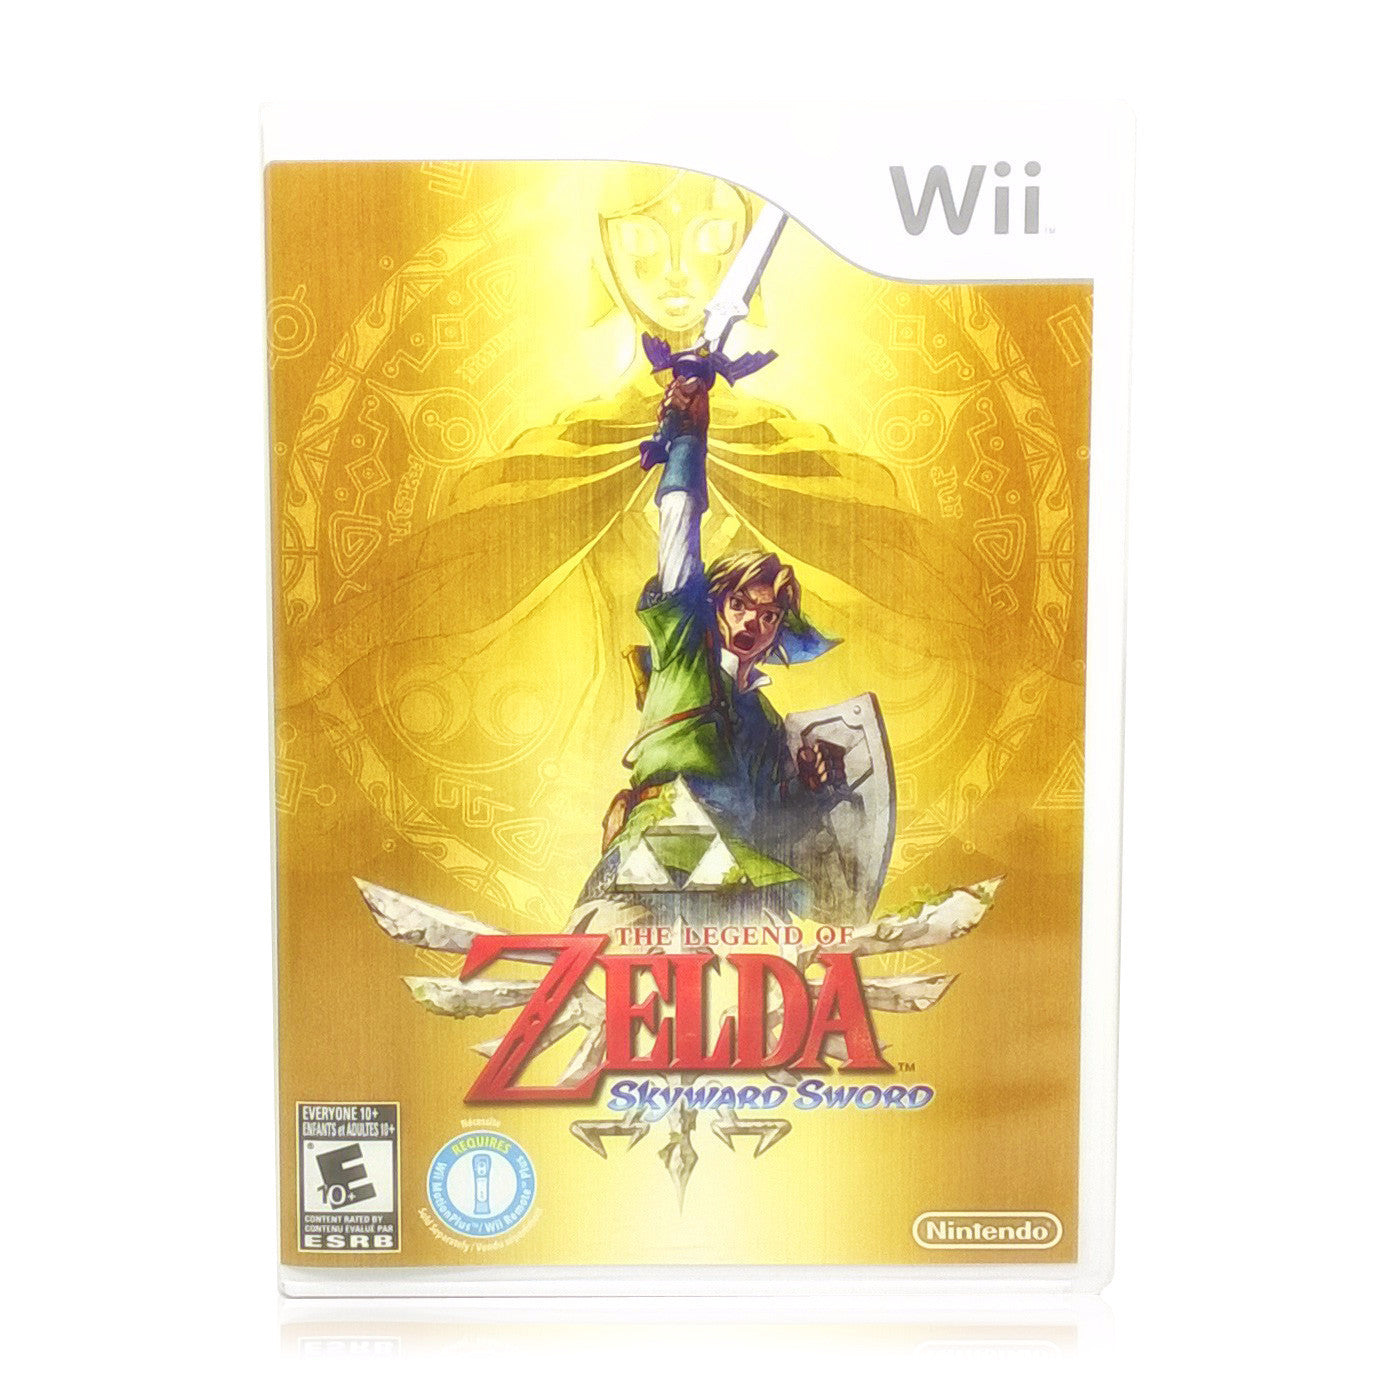 The Legend of Zelda: Skyward Sword Nintendo Wii Game - Case